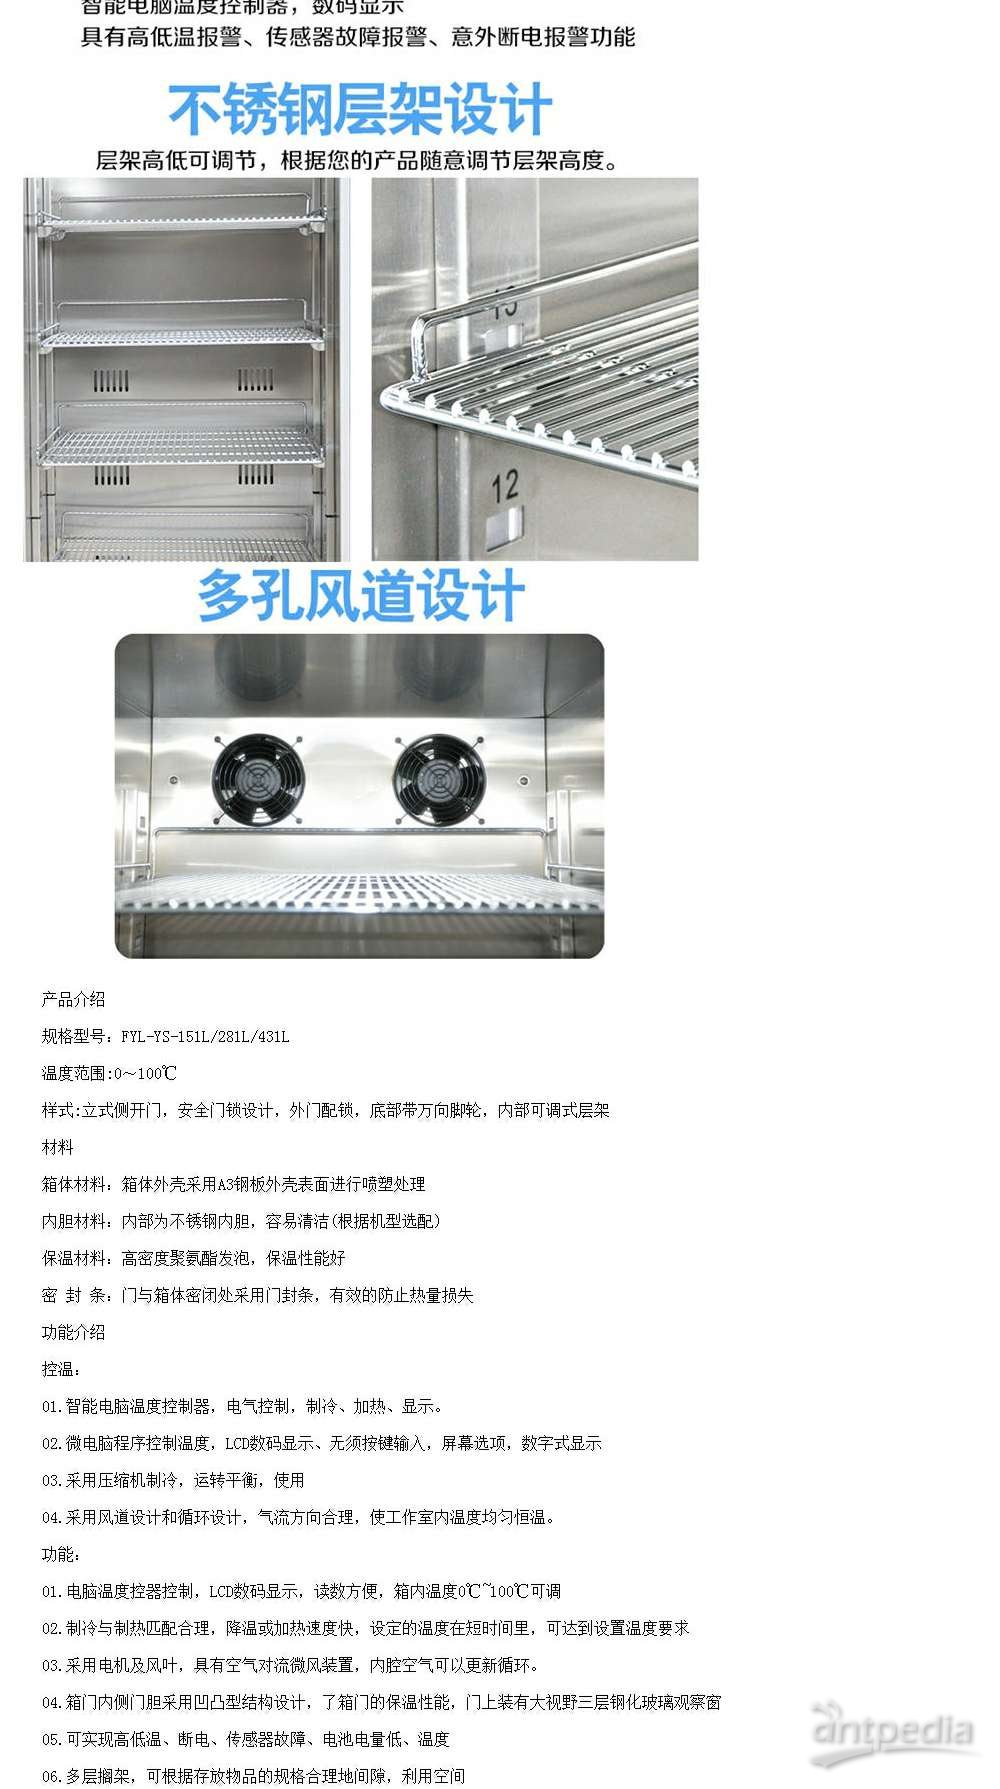 冷藏冰箱(双门双锁)病房护理及医院设备 FYL-YS-280L